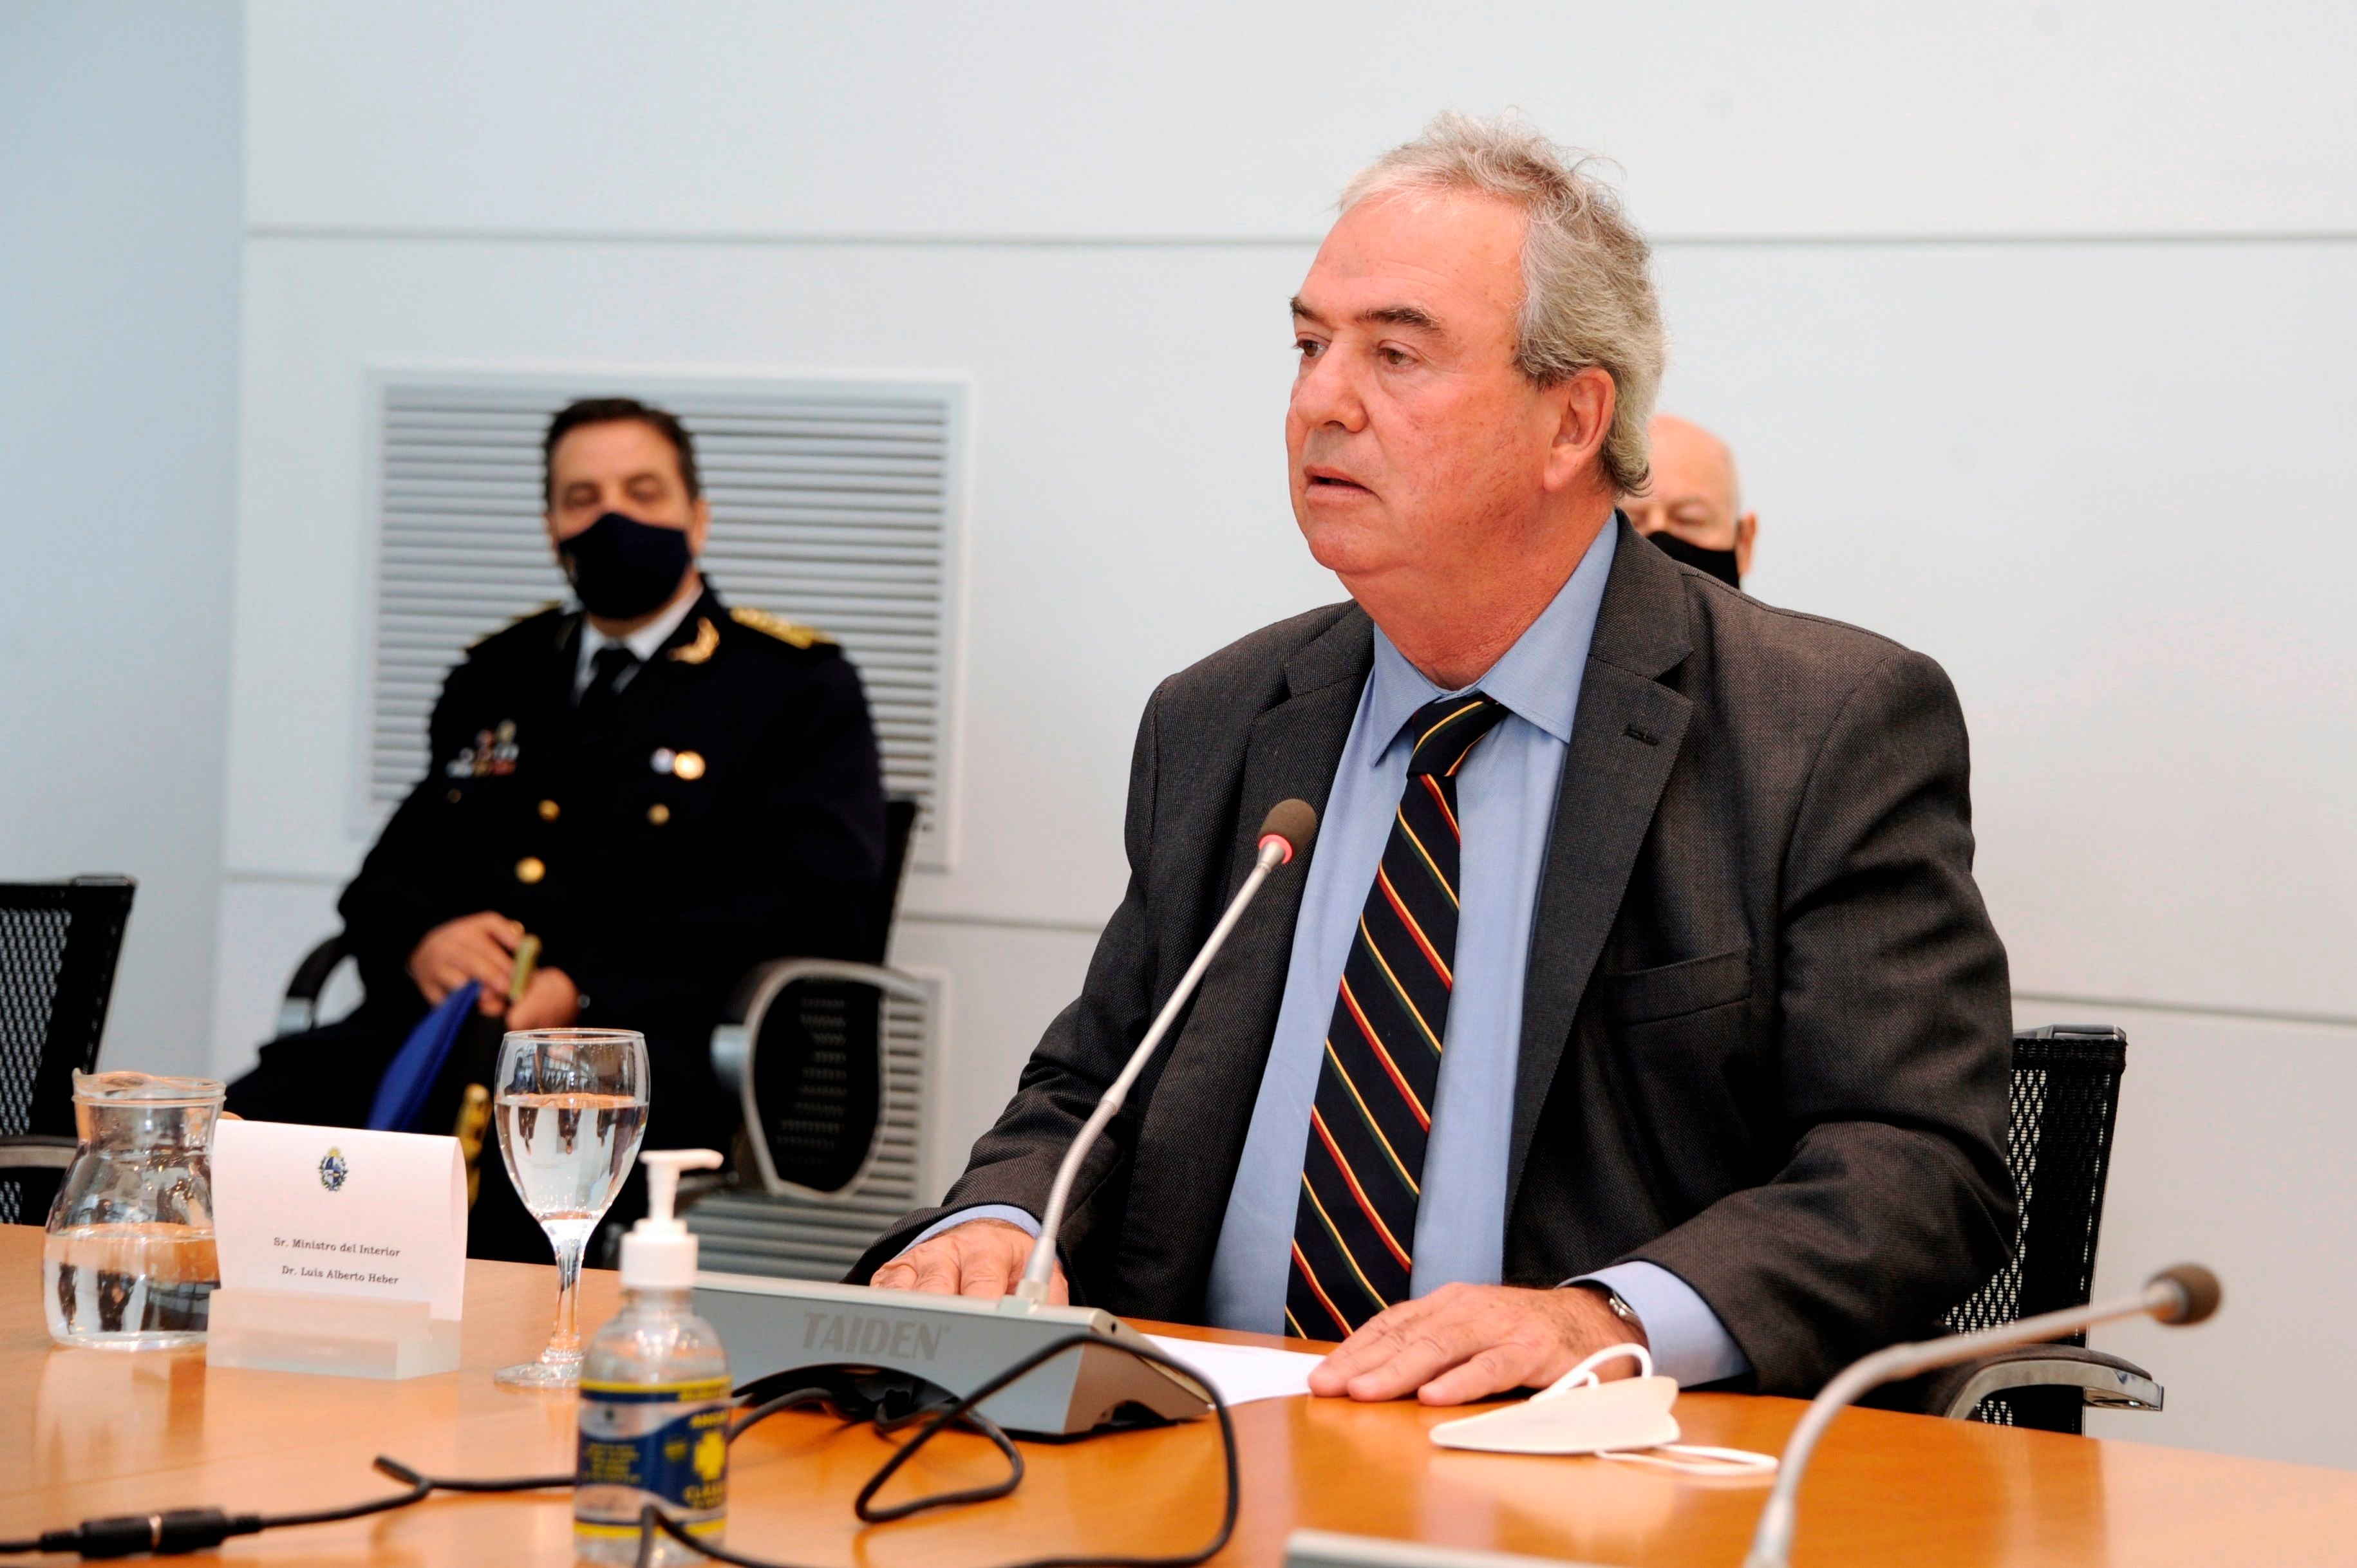 Los trabajadores acusan al ministro Luis Alberto Heber de querer "manchar" la memoria de su compañero (EFE/ Presidencia de Uruguay/Walter Paciello)